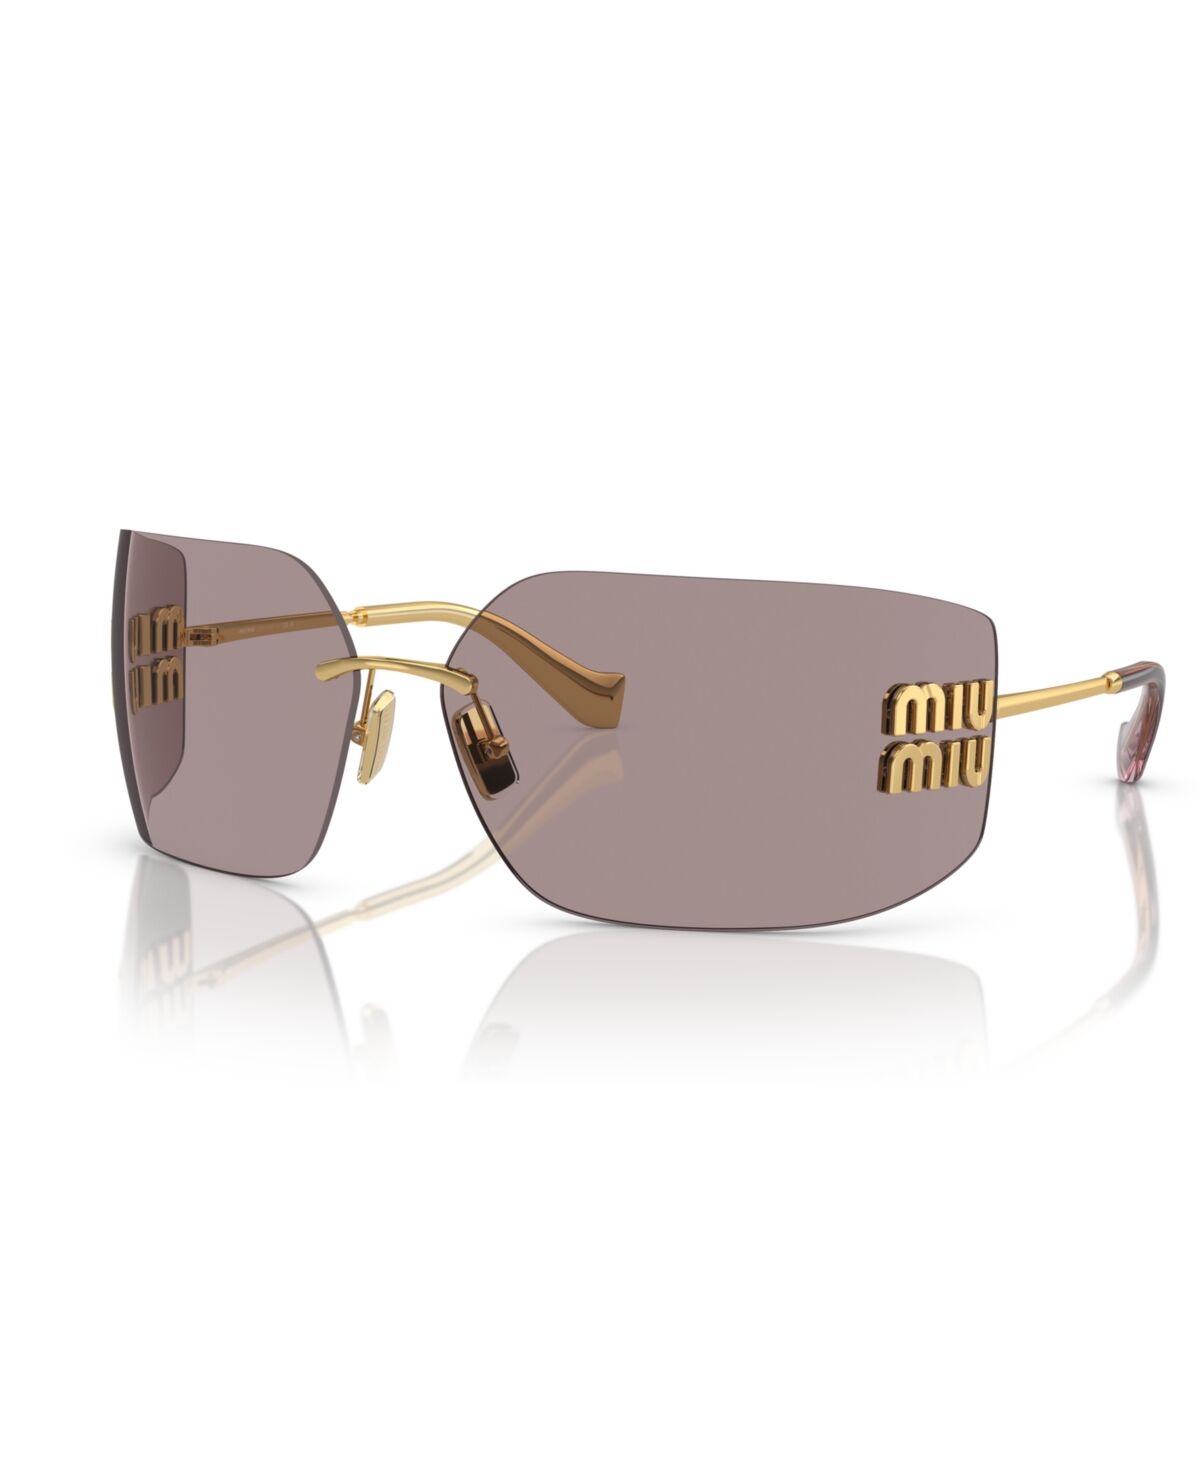 Miu Miu Women's Sunglasses, Mu 54YS - Gold